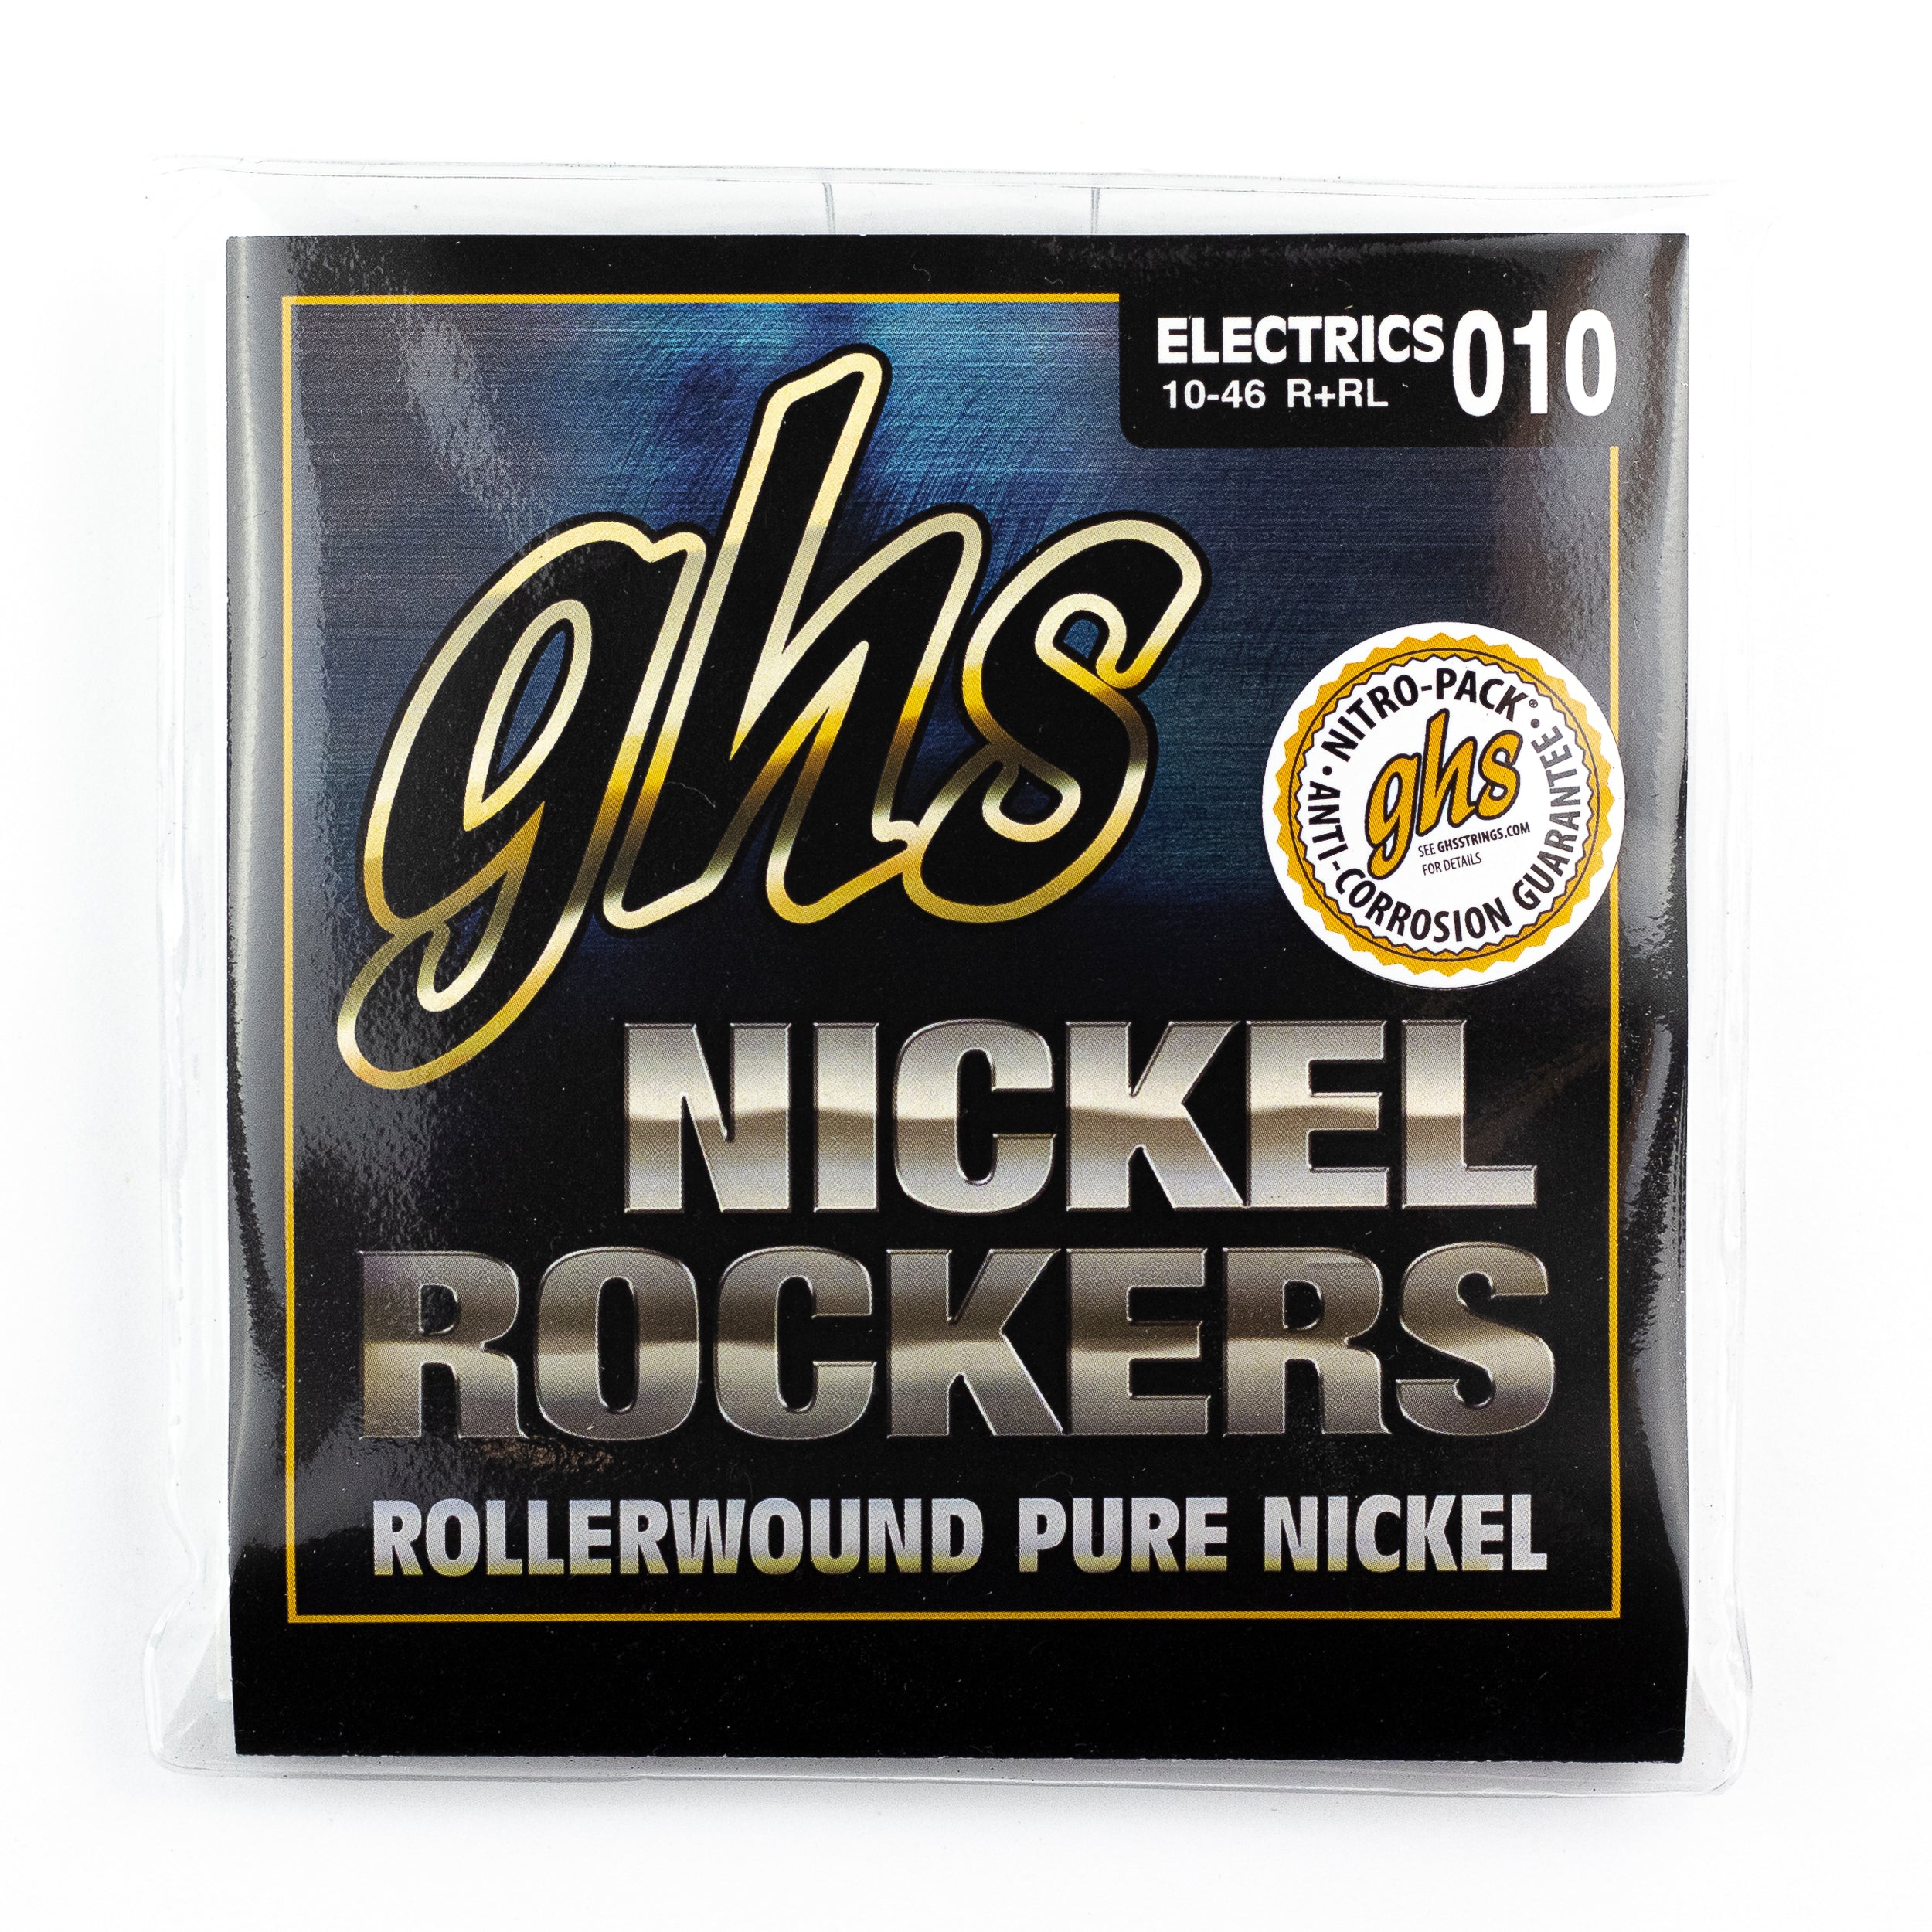 GHS Nickel Rockers Pure Nickel Rollerwound 10-46 Electric Guitar Strings, Light